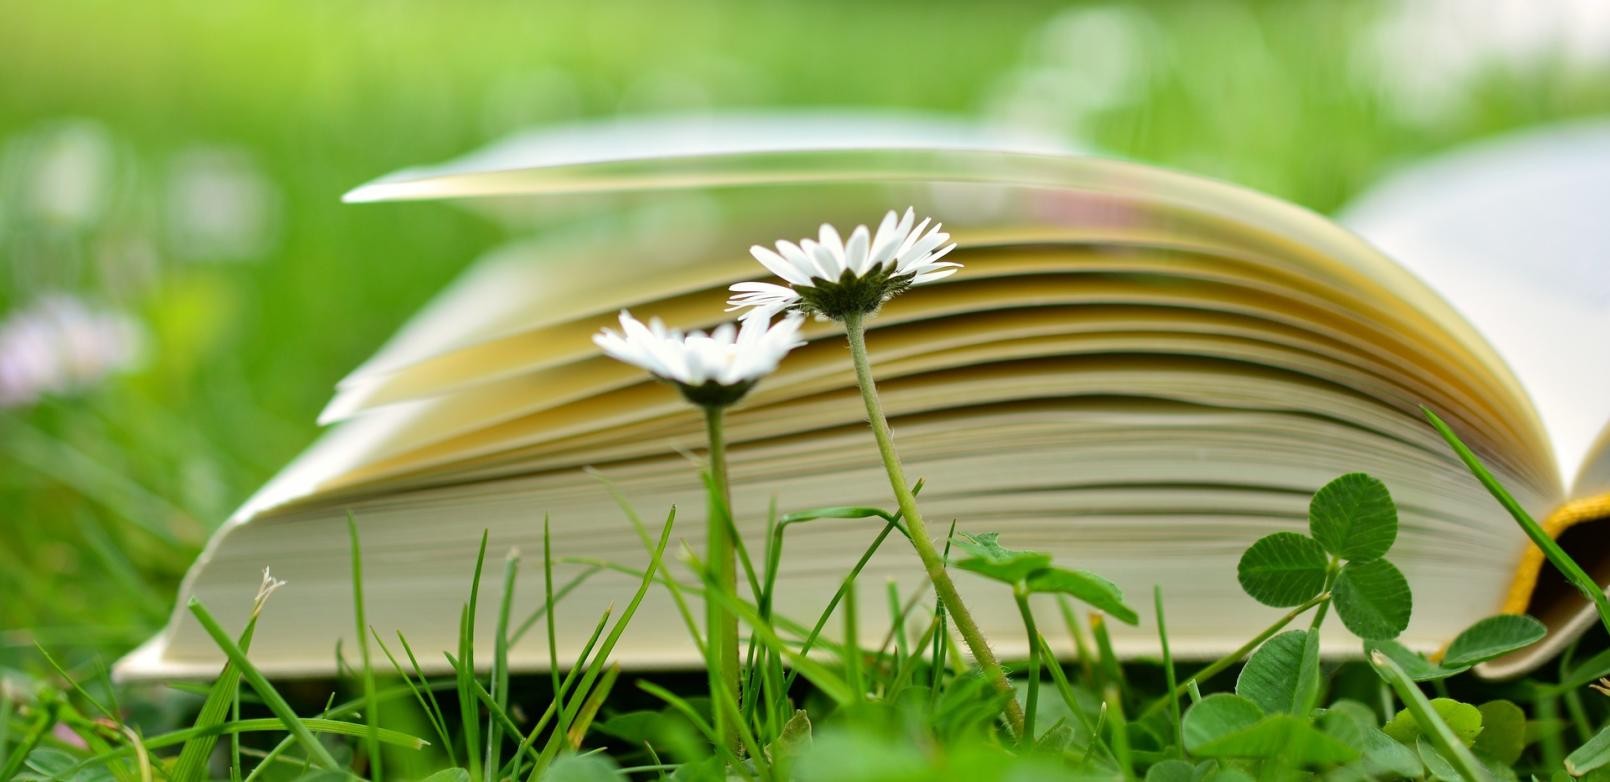 aufgeschlagenes Buch im Gras, davor zwei Gänseblümchen